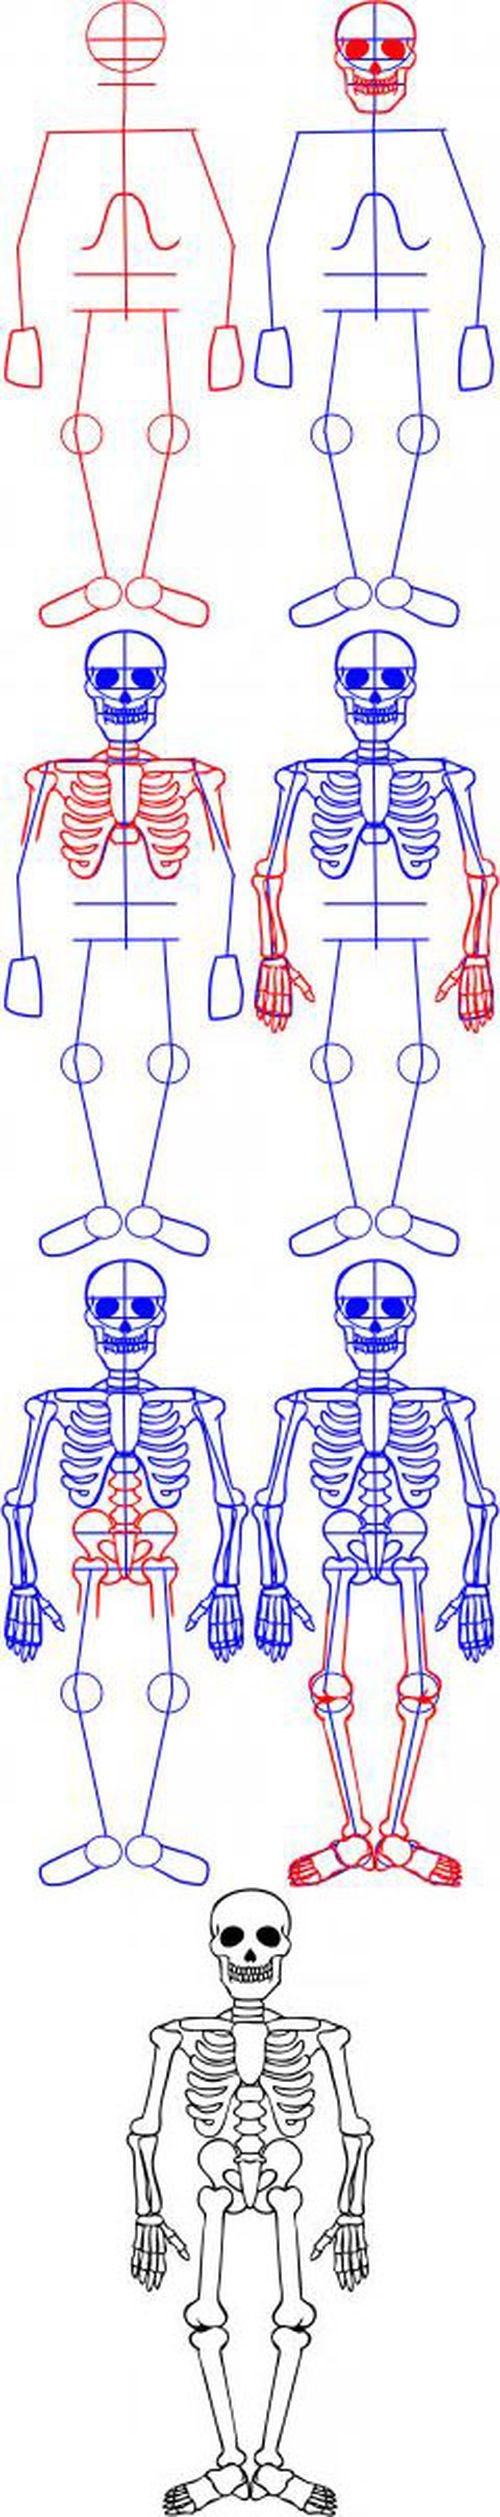 Cómo dibujar un esqueleto?